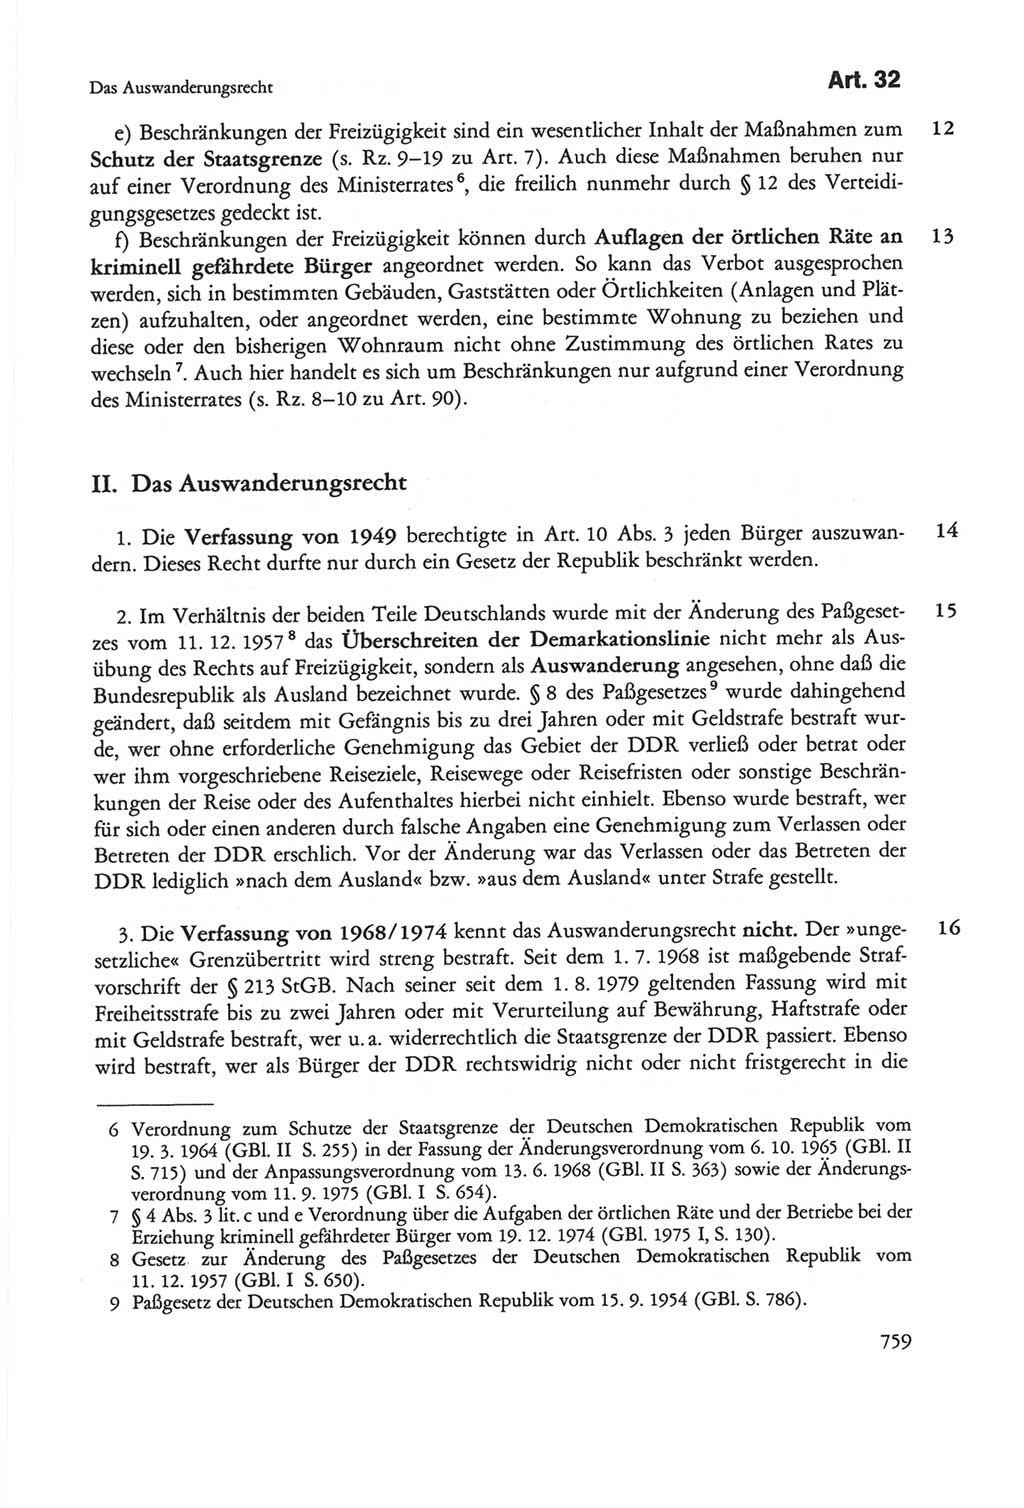 Die sozialistische Verfassung der Deutschen Demokratischen Republik (DDR), Kommentar mit einem Nachtrag 1997, Seite 759 (Soz. Verf. DDR Komm. Nachtr. 1997, S. 759)